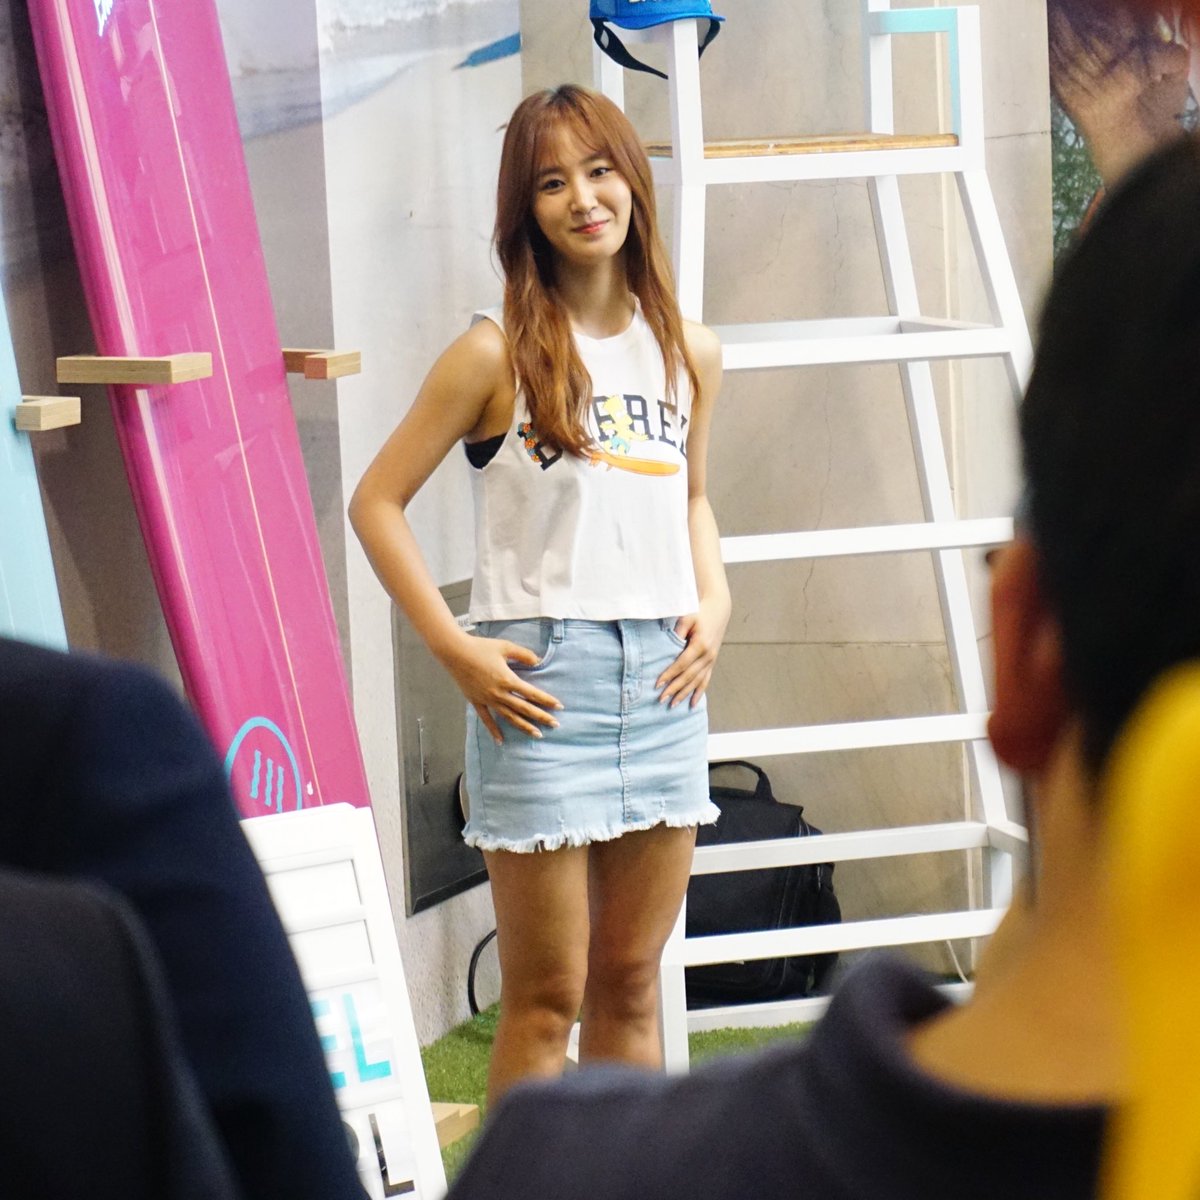 [PIC][29-07-2016]Yuri tham dự buổi Fansign cho thương hiệu “BARREL” vào chiều nay Coh8w_eUAAEpicg